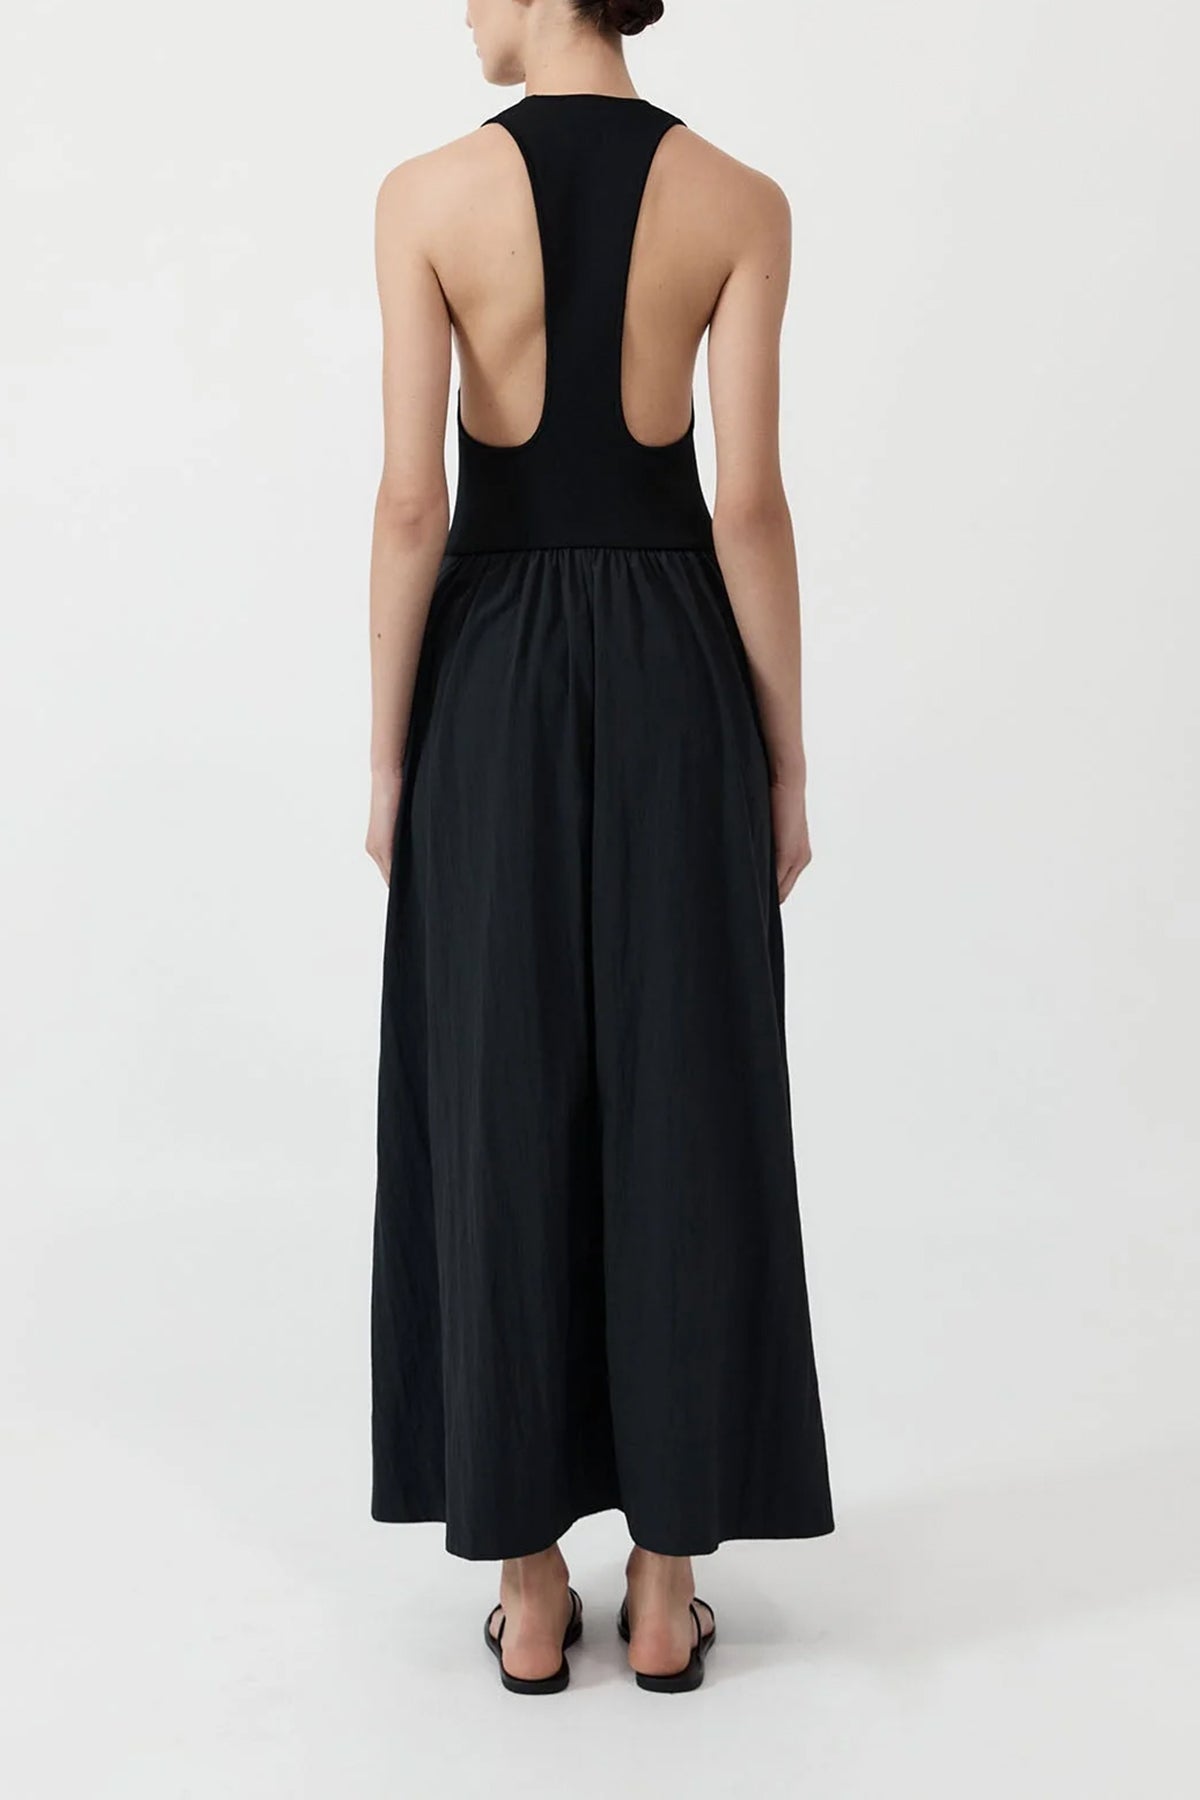 Plunge Neck Dress in Black - shop-olivia.com